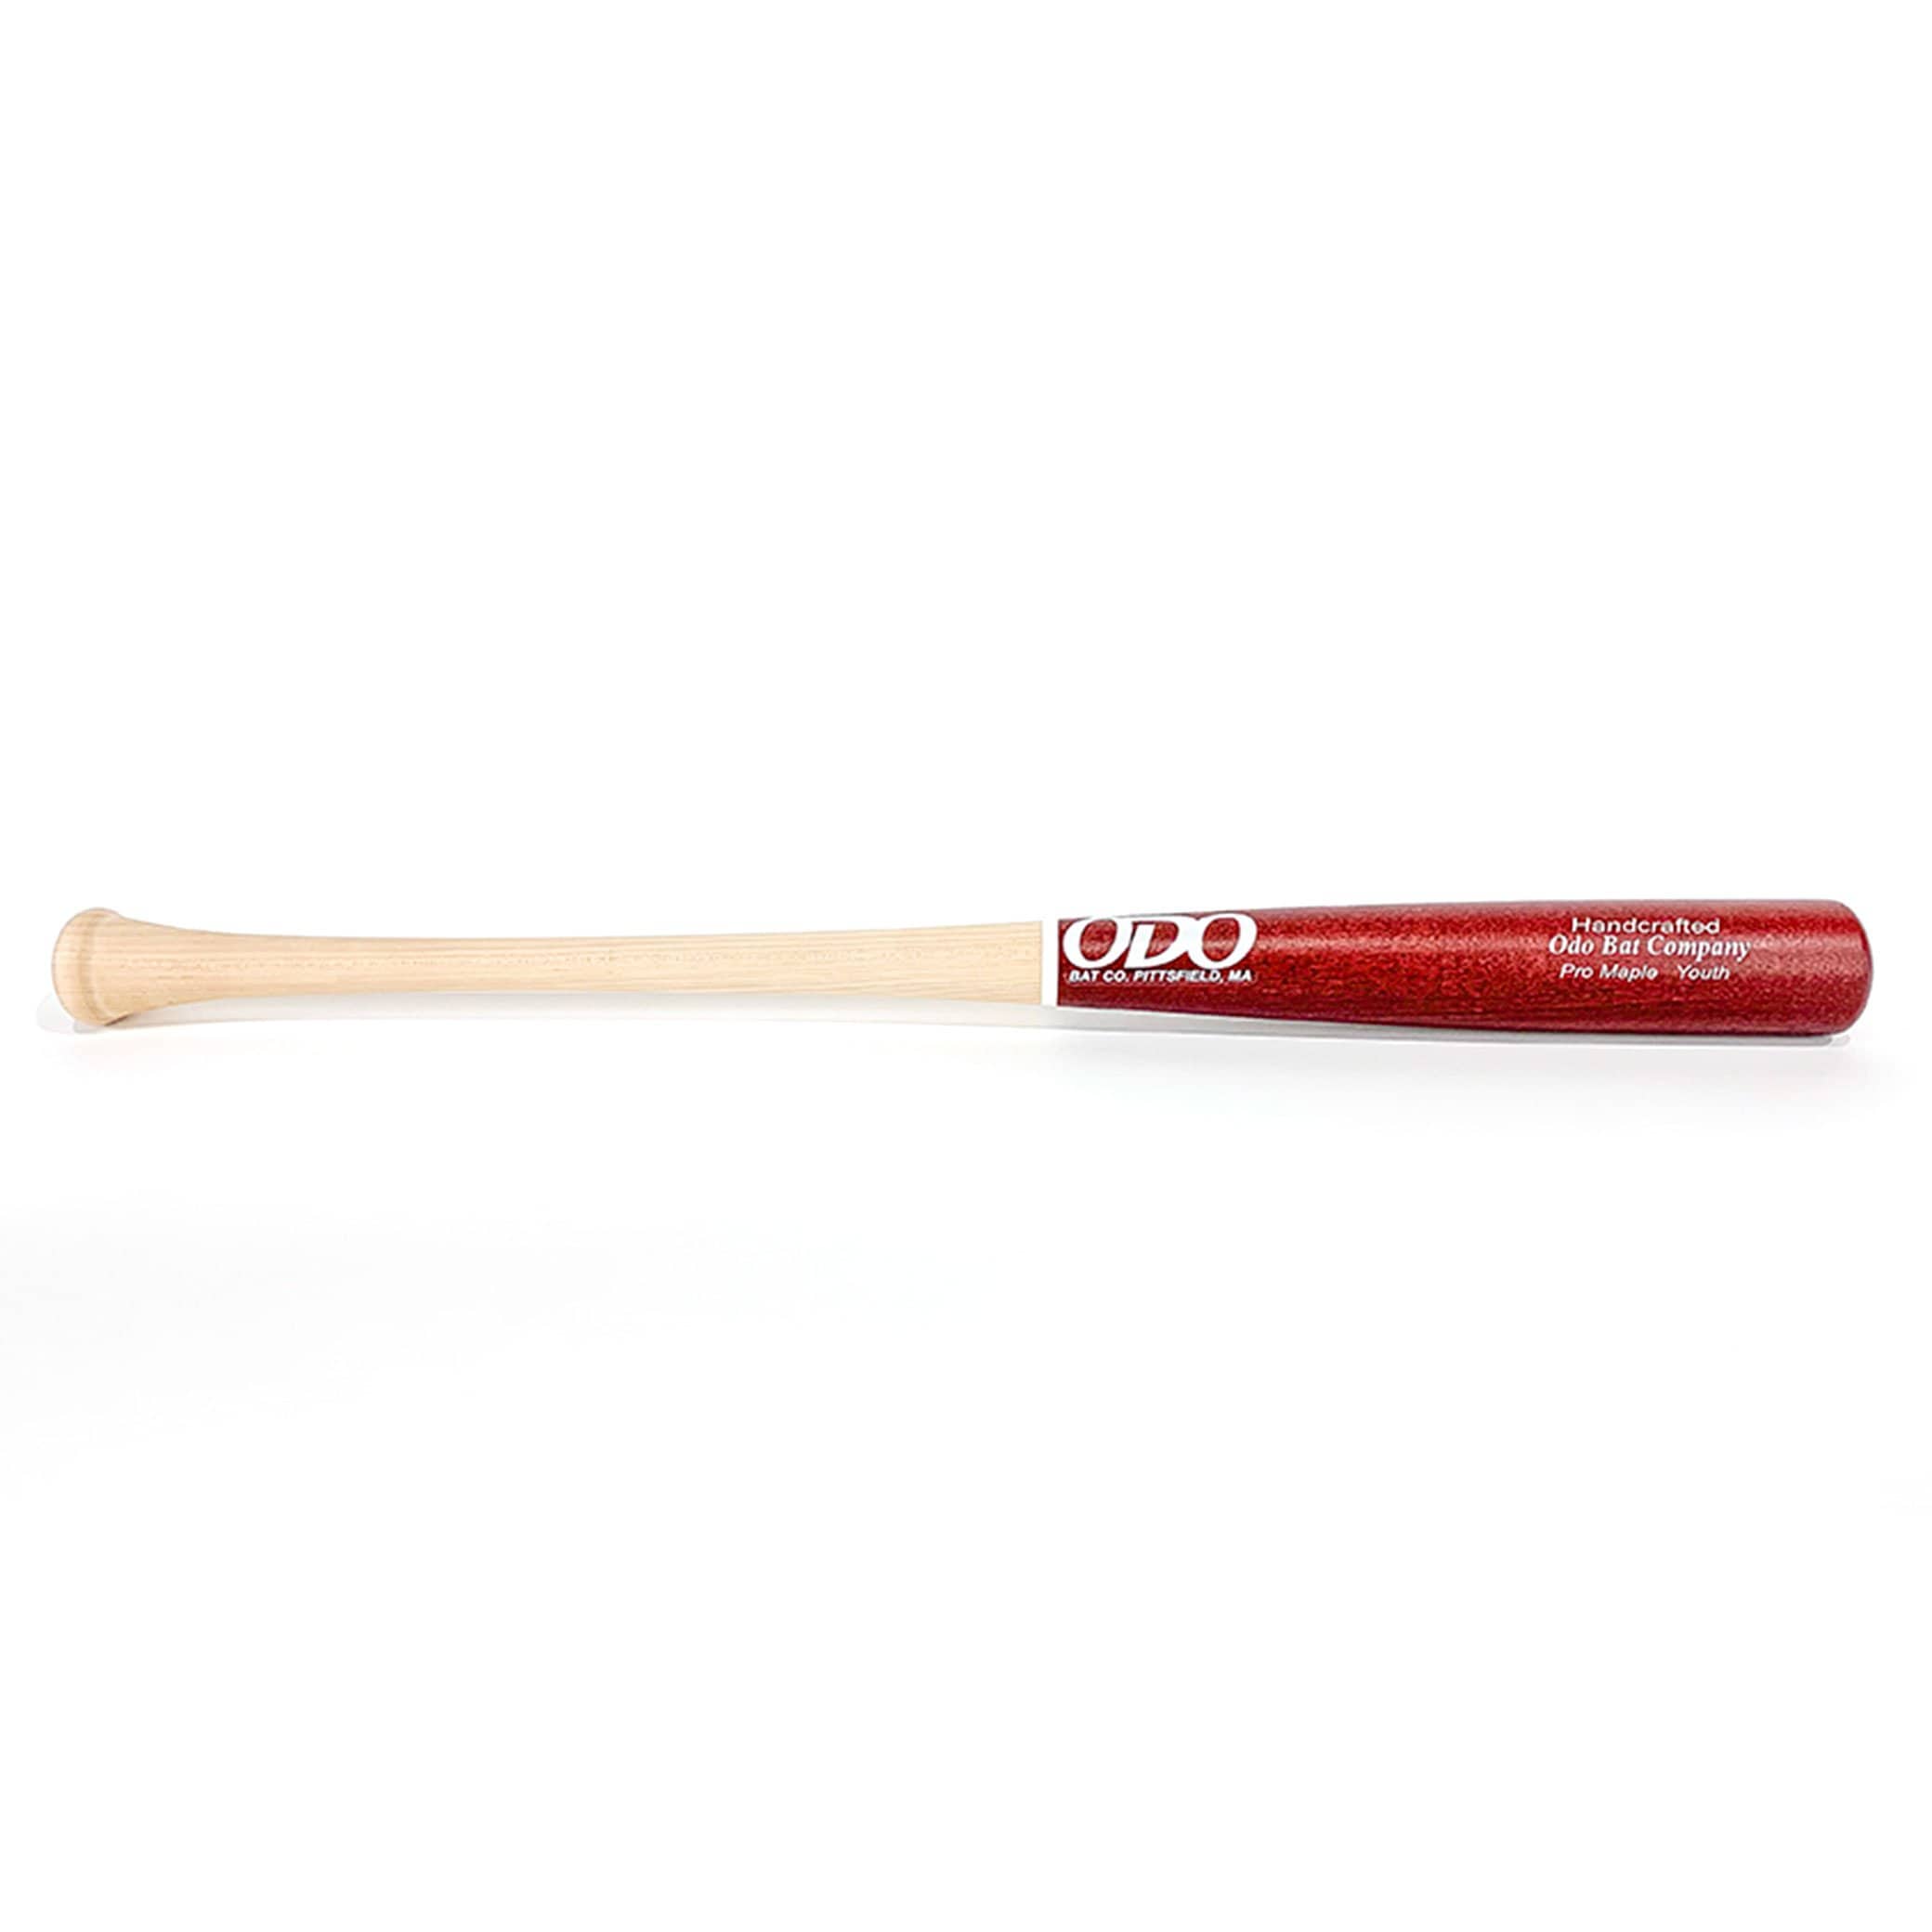 Odo Bat Co. Pro Maple Youth Wood Baseball Bat | Maple | 29